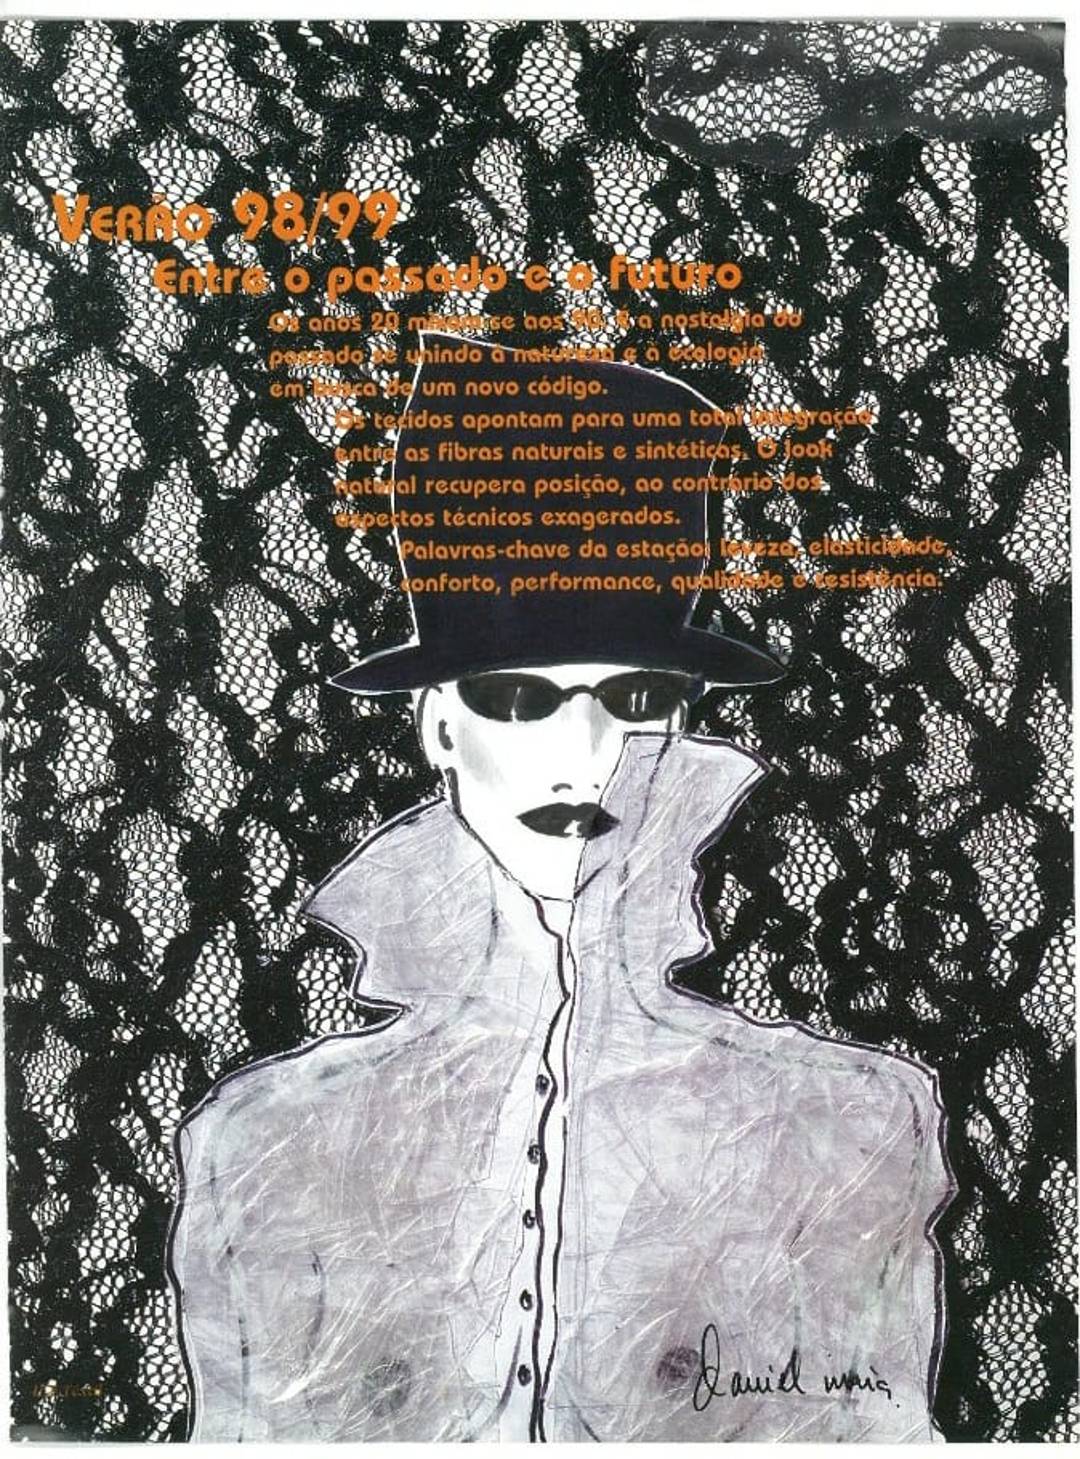 Revista Cores e Tecidos, editorial têxtil, Verão 1989/1990